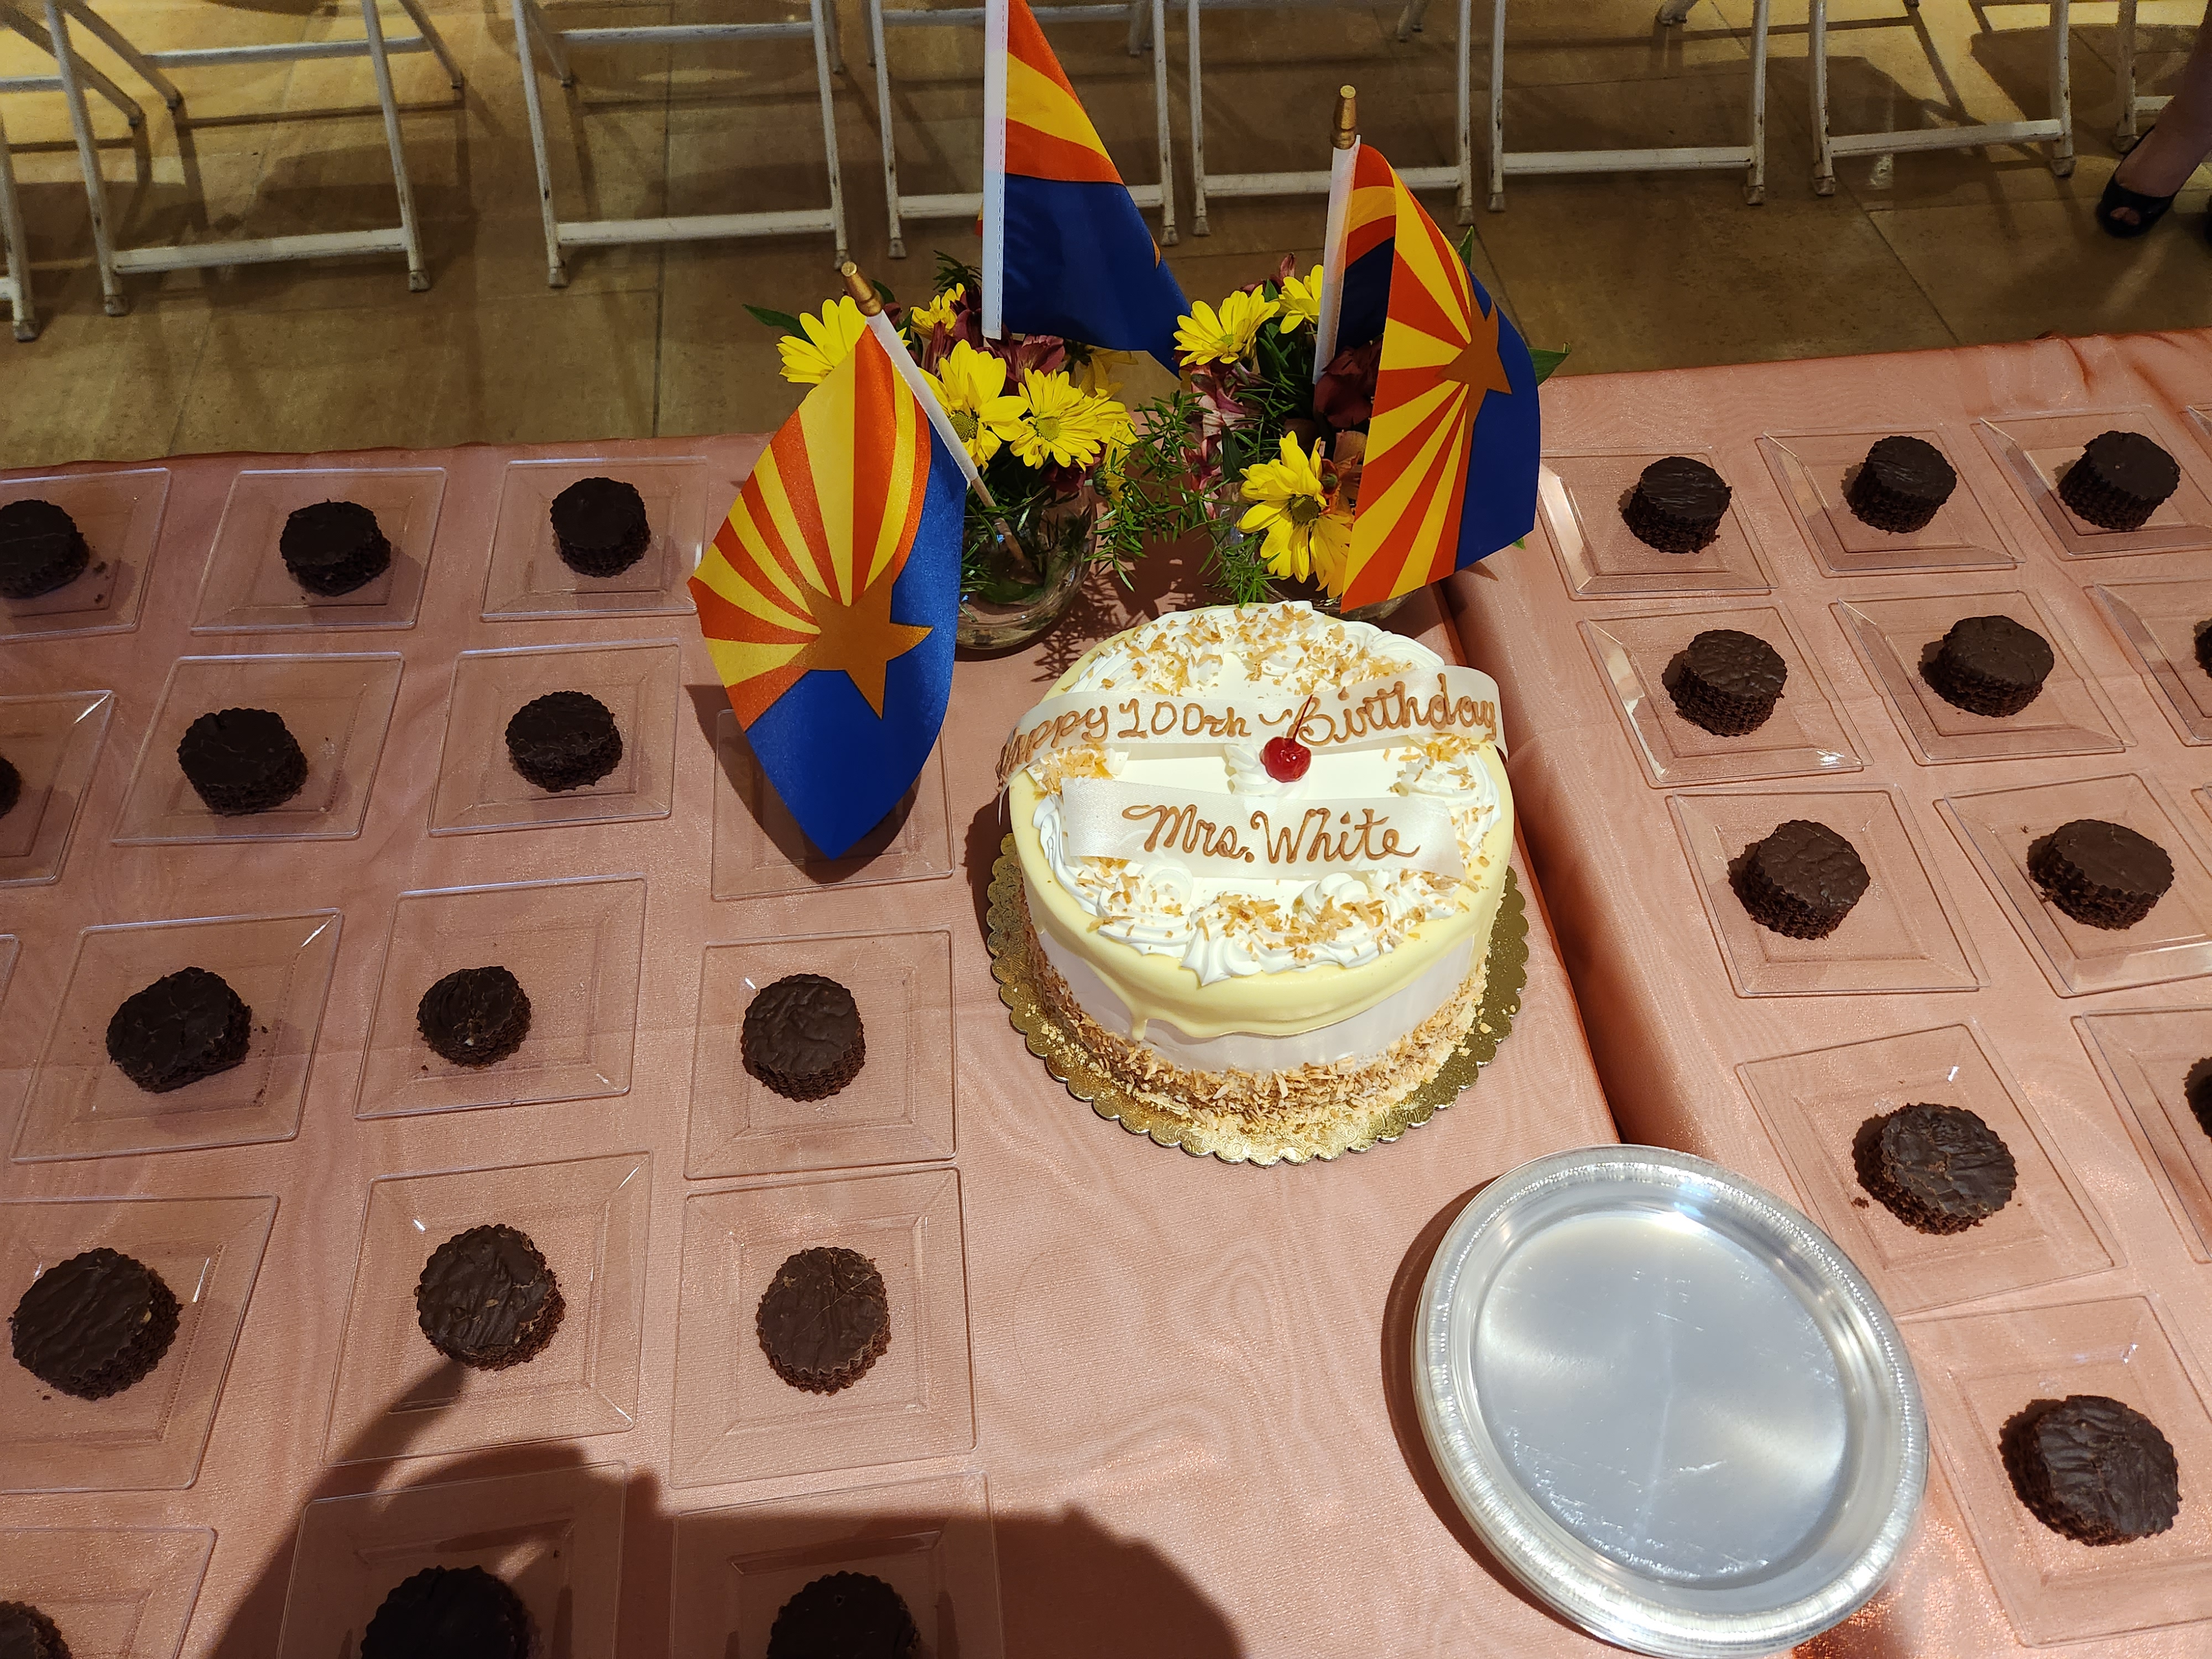 Mrs. White's 100th Birthday Cake